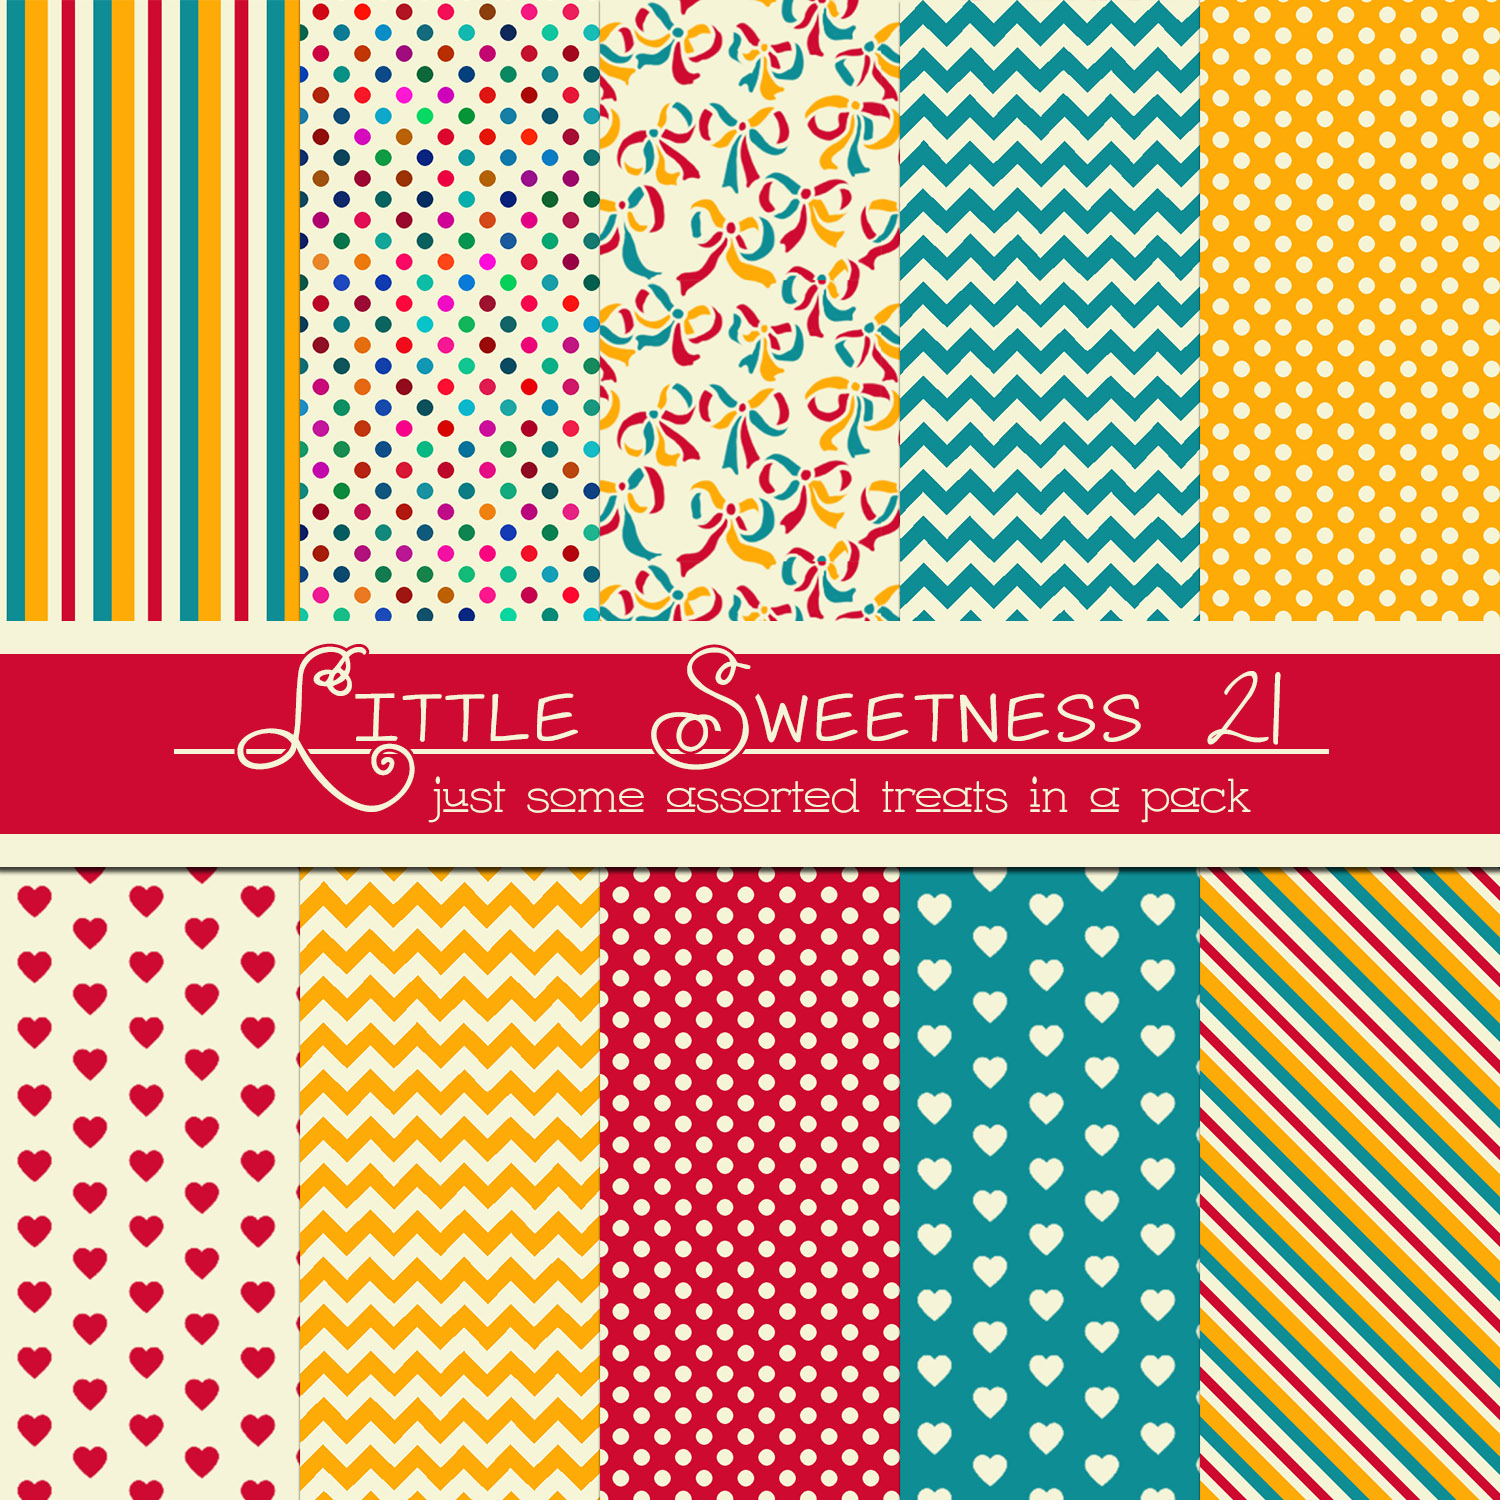 Free Little Sweetness 21